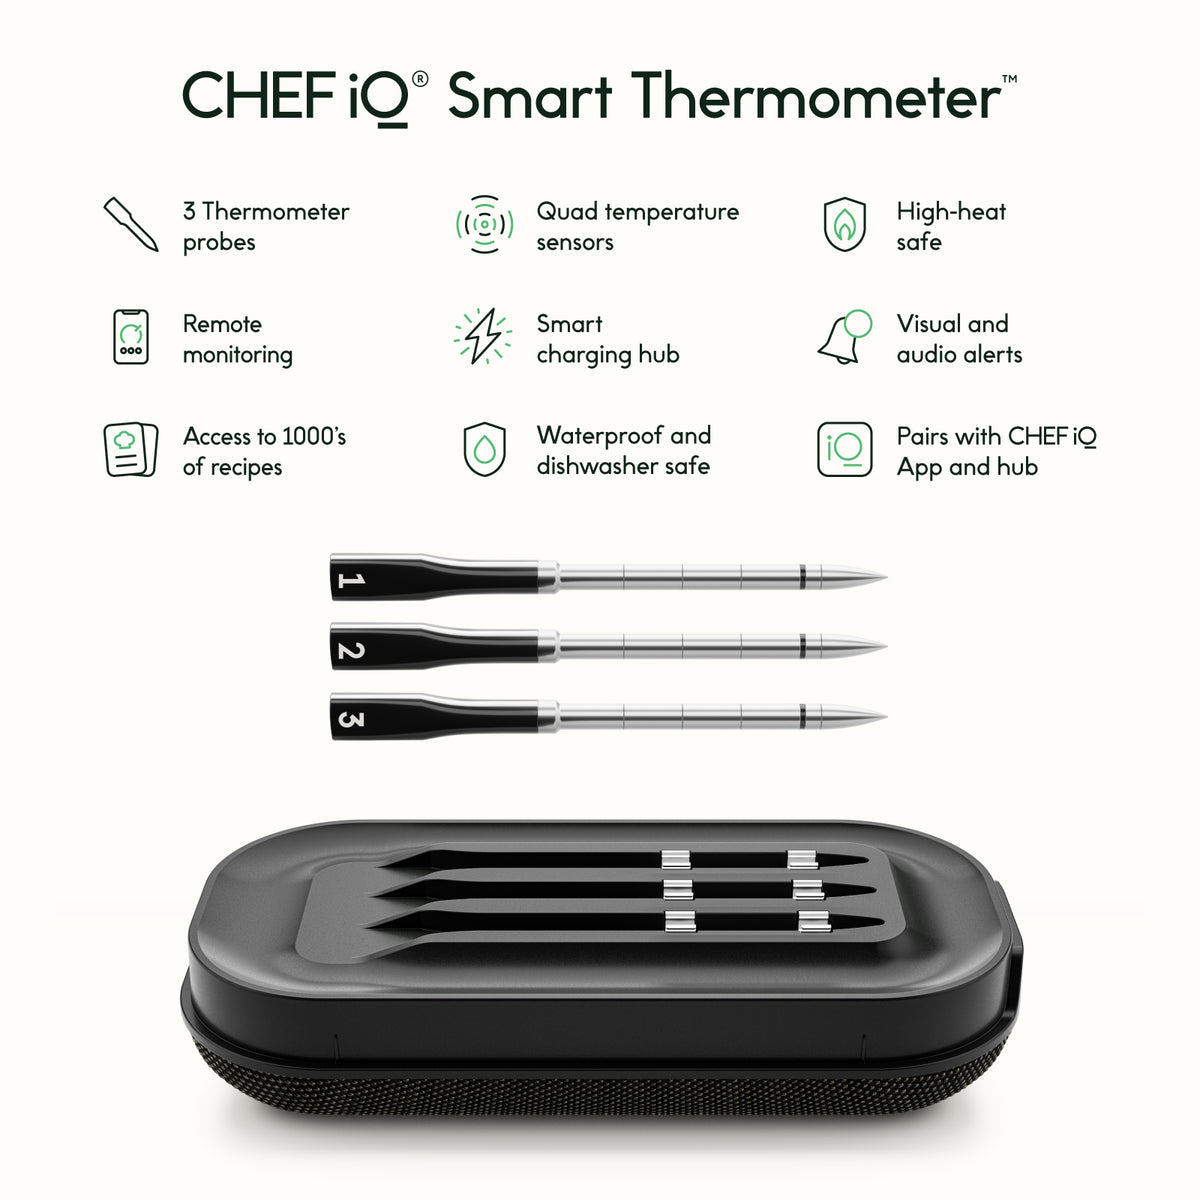 Smart Thermometer Setup & Tips – CHEF iQ